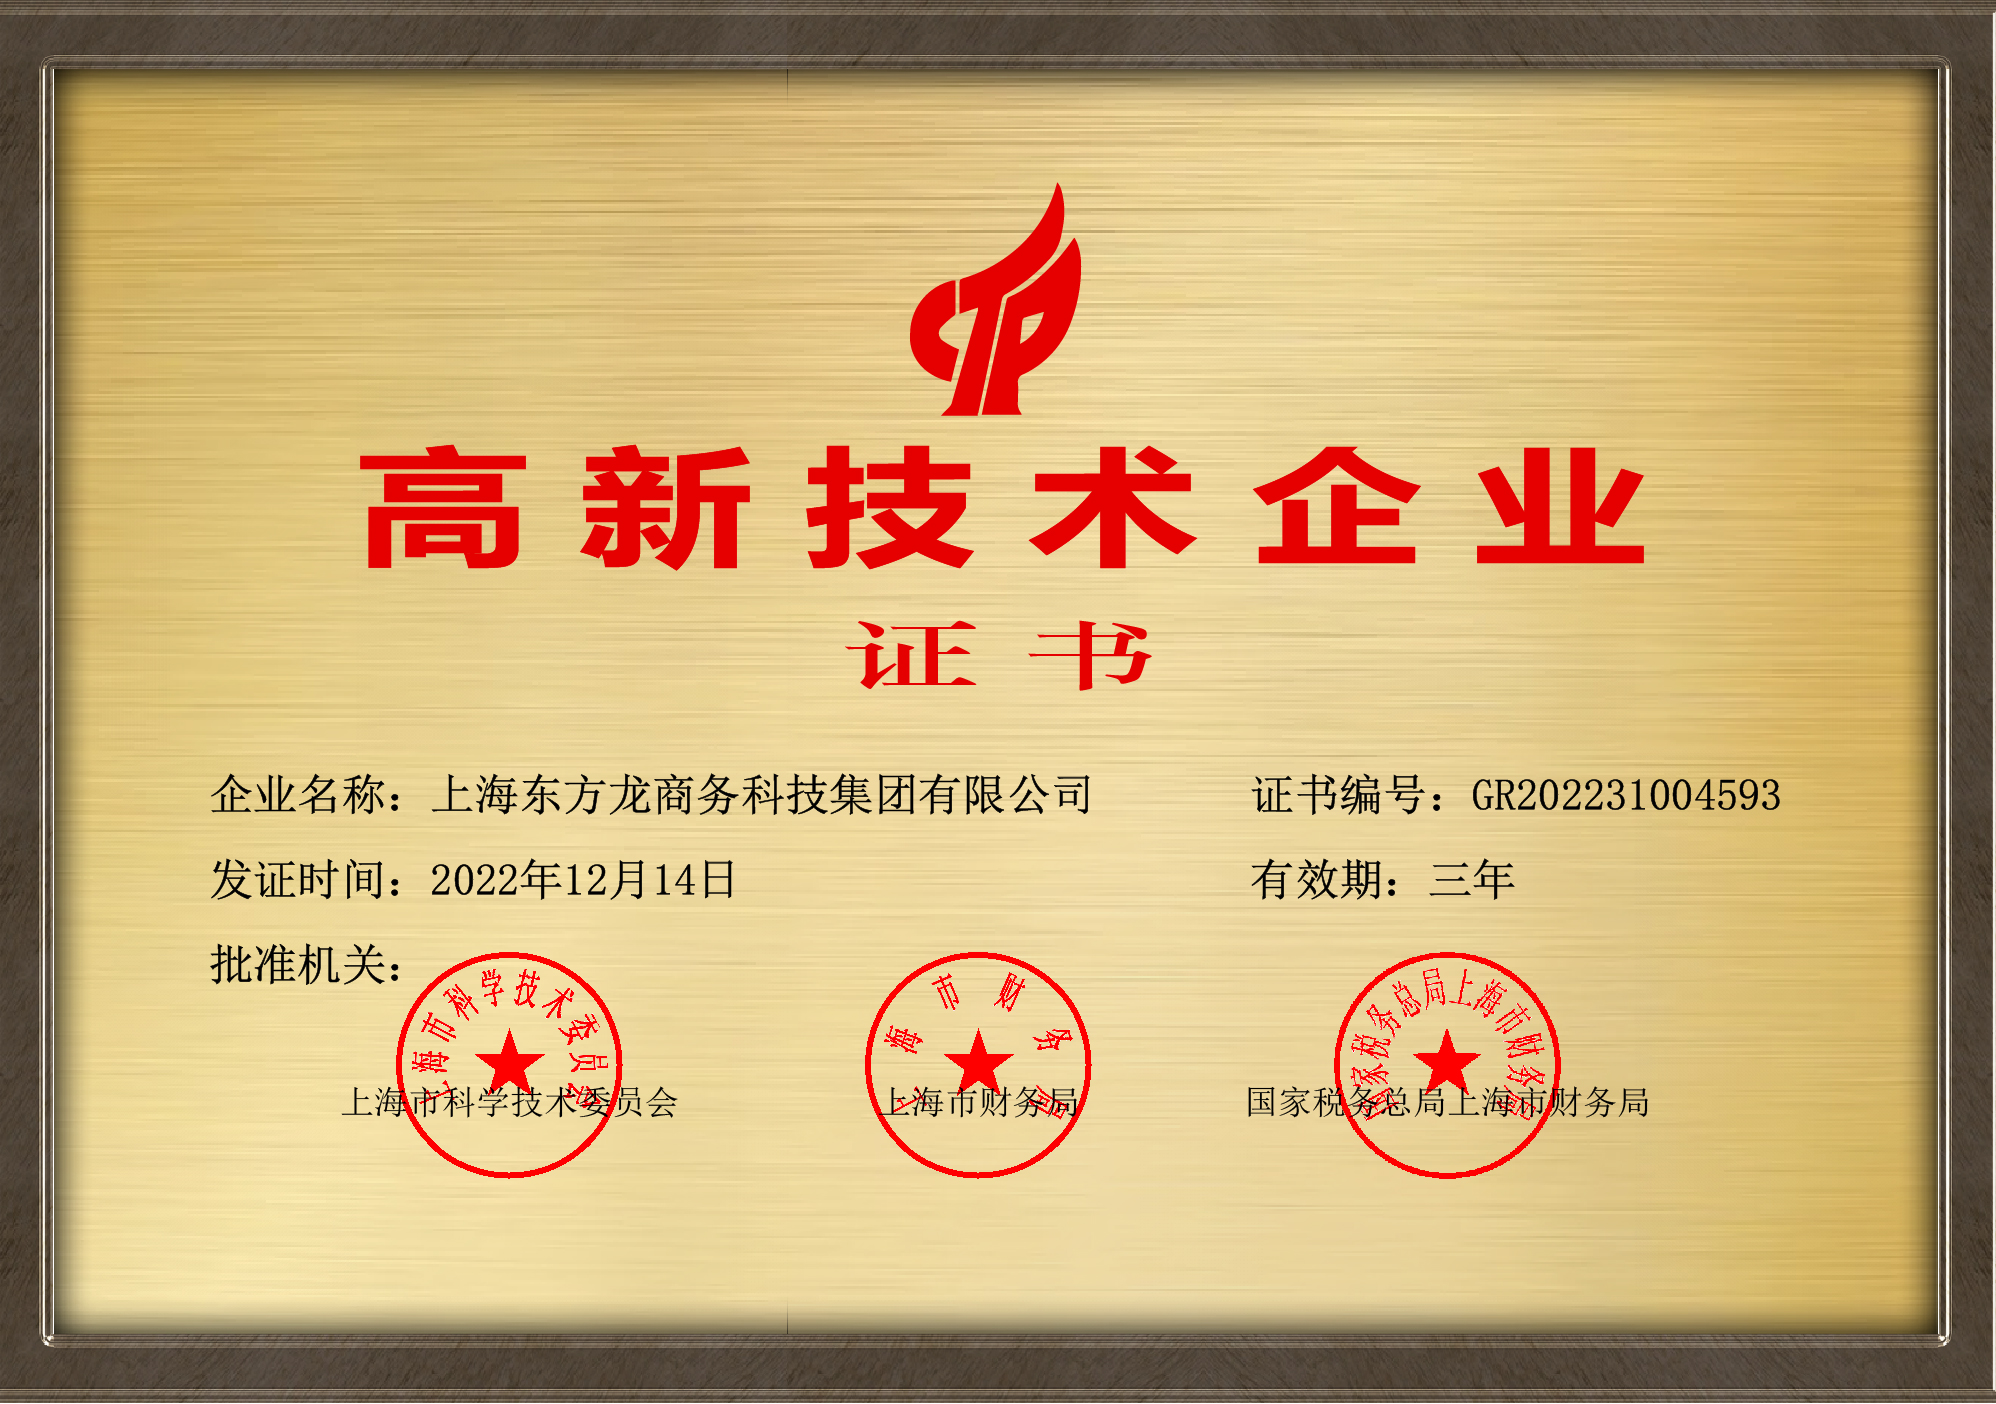 东方龙商务集团高新技术企业证书